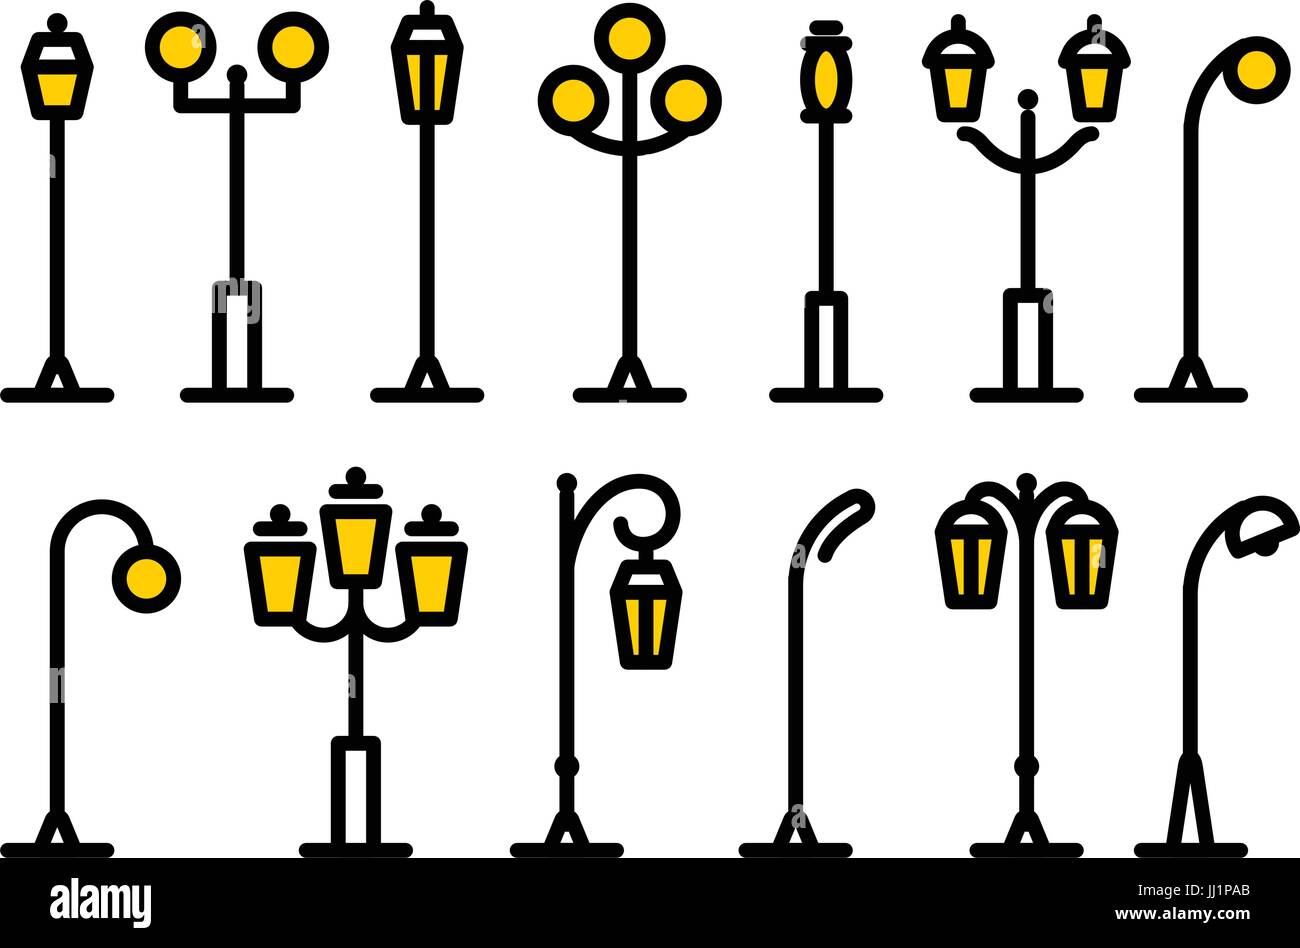 Straßenlaterne Symbolsammlung zu skizzieren. Isolierte Parks design Element-Vektor-illustration Stock Vektor